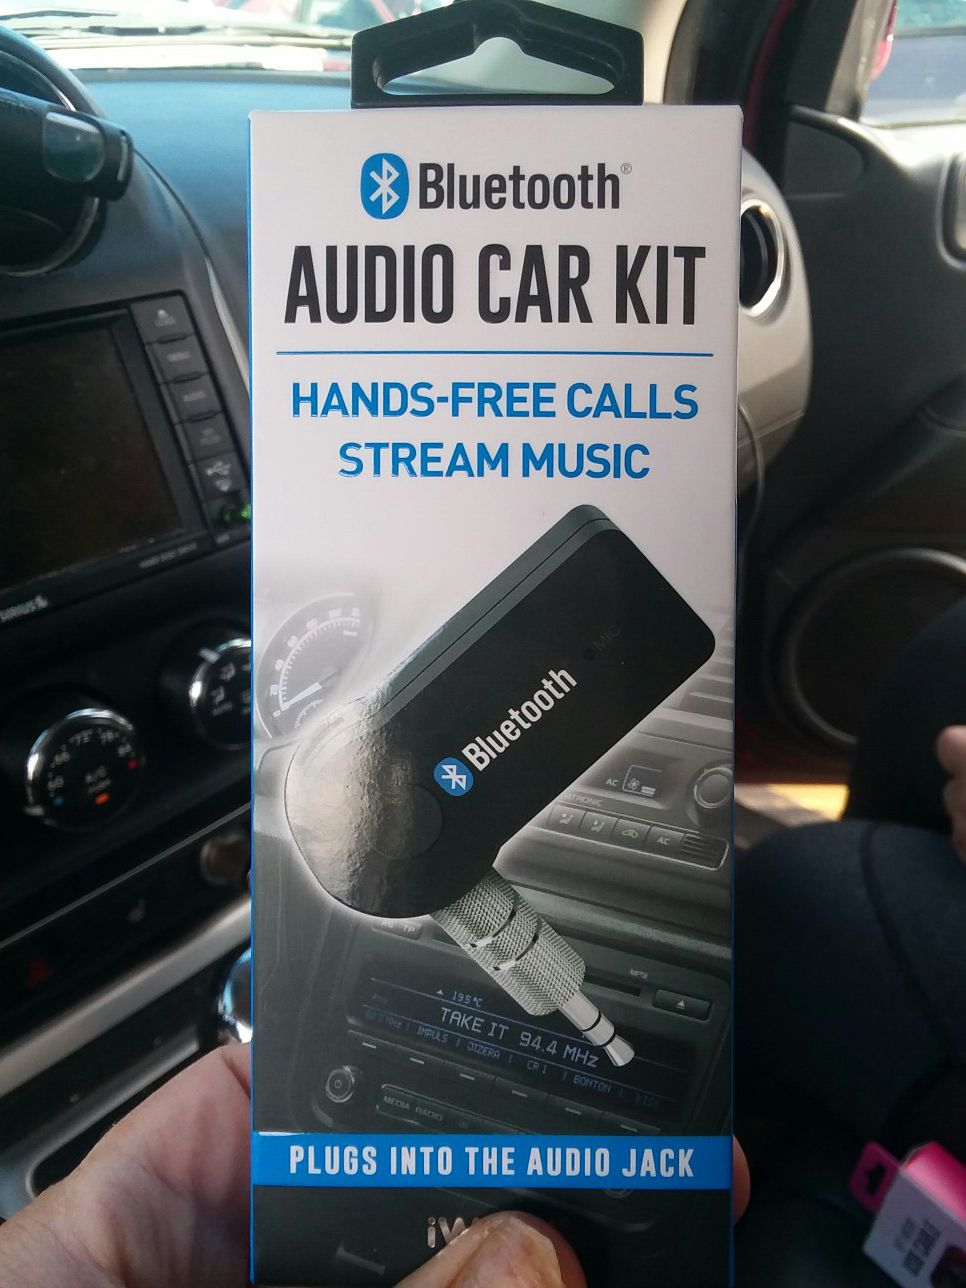 Audio car kit